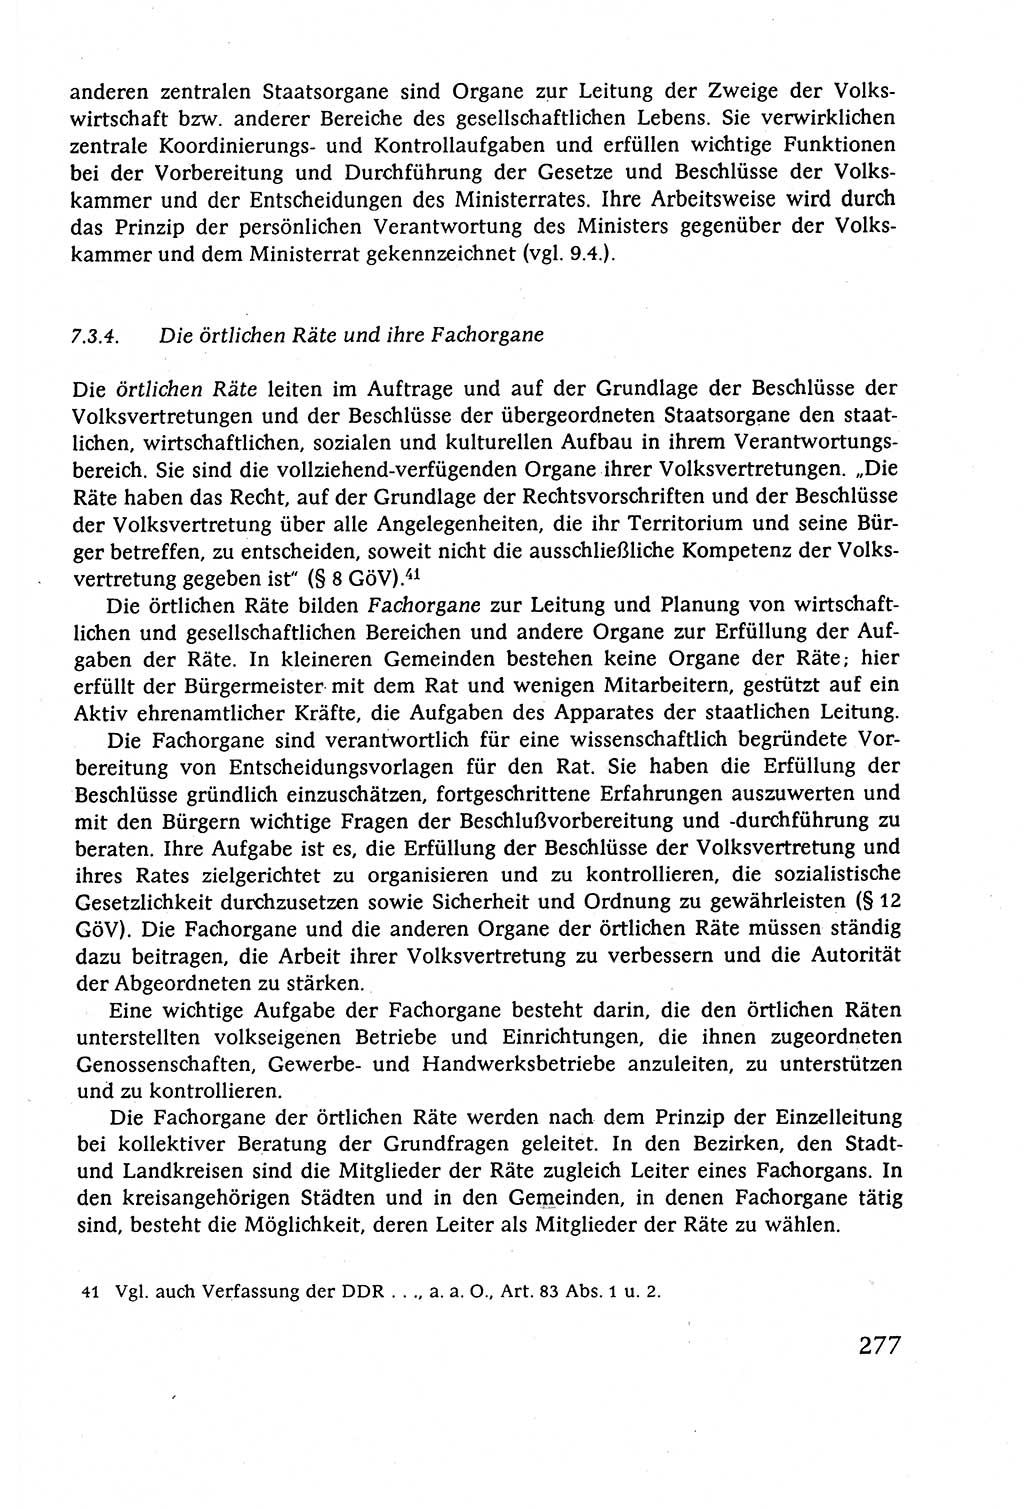 Staatsrecht der DDR (Deutsche Demokratische Republik), Lehrbuch 1977, Seite 277 (St.-R. DDR Lb. 1977, S. 277)